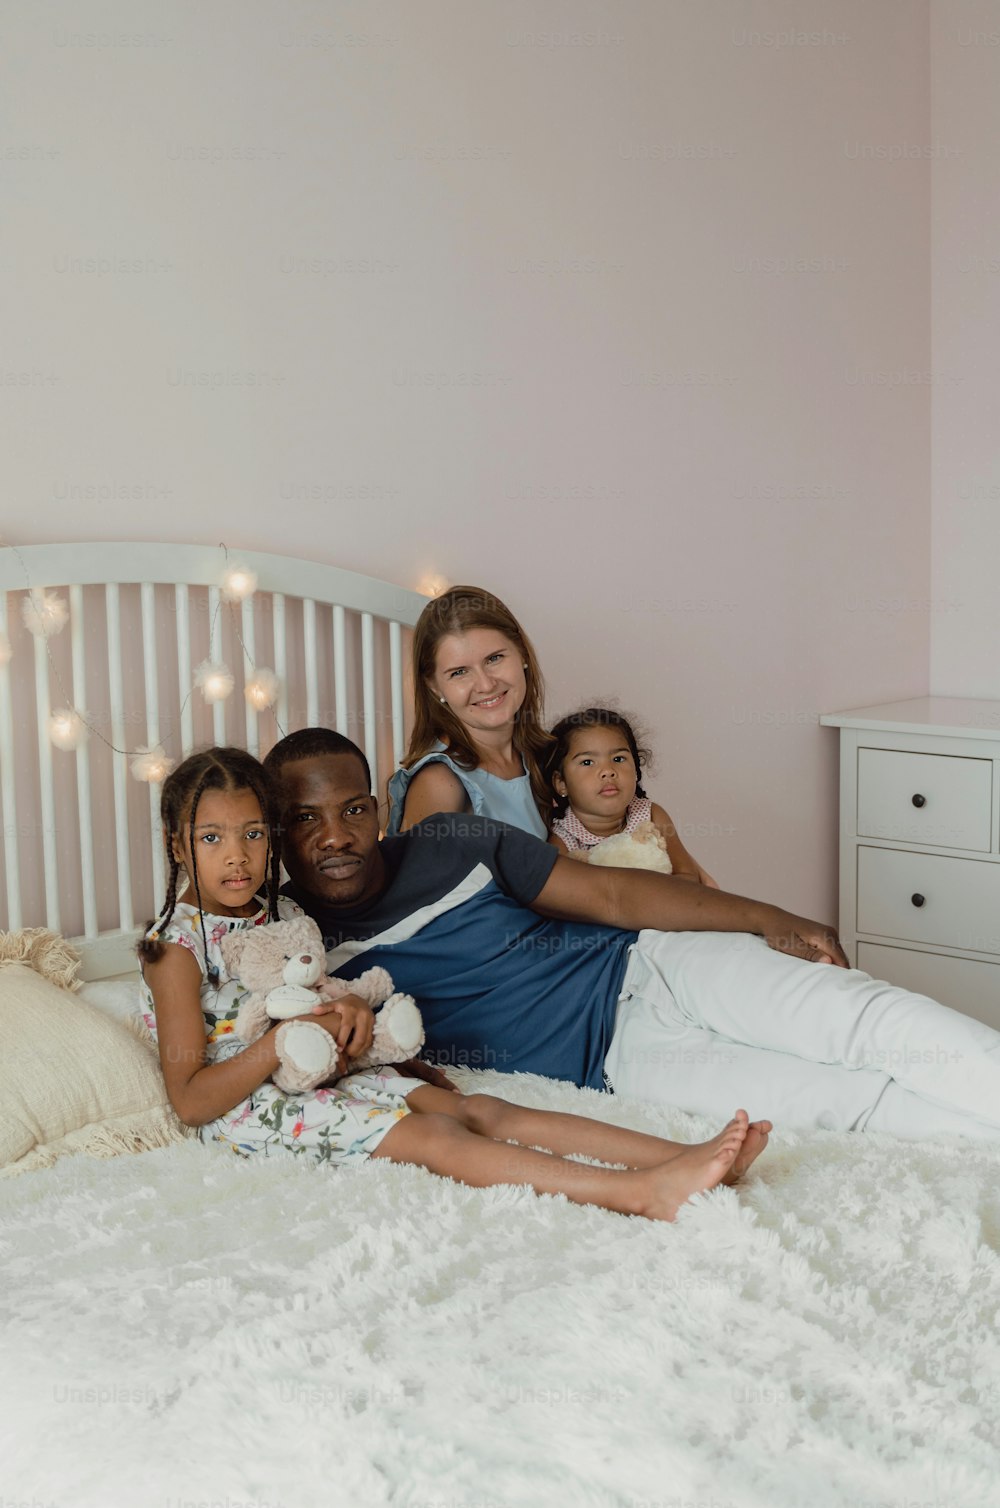 Una mujer y dos niños sentados en una cama